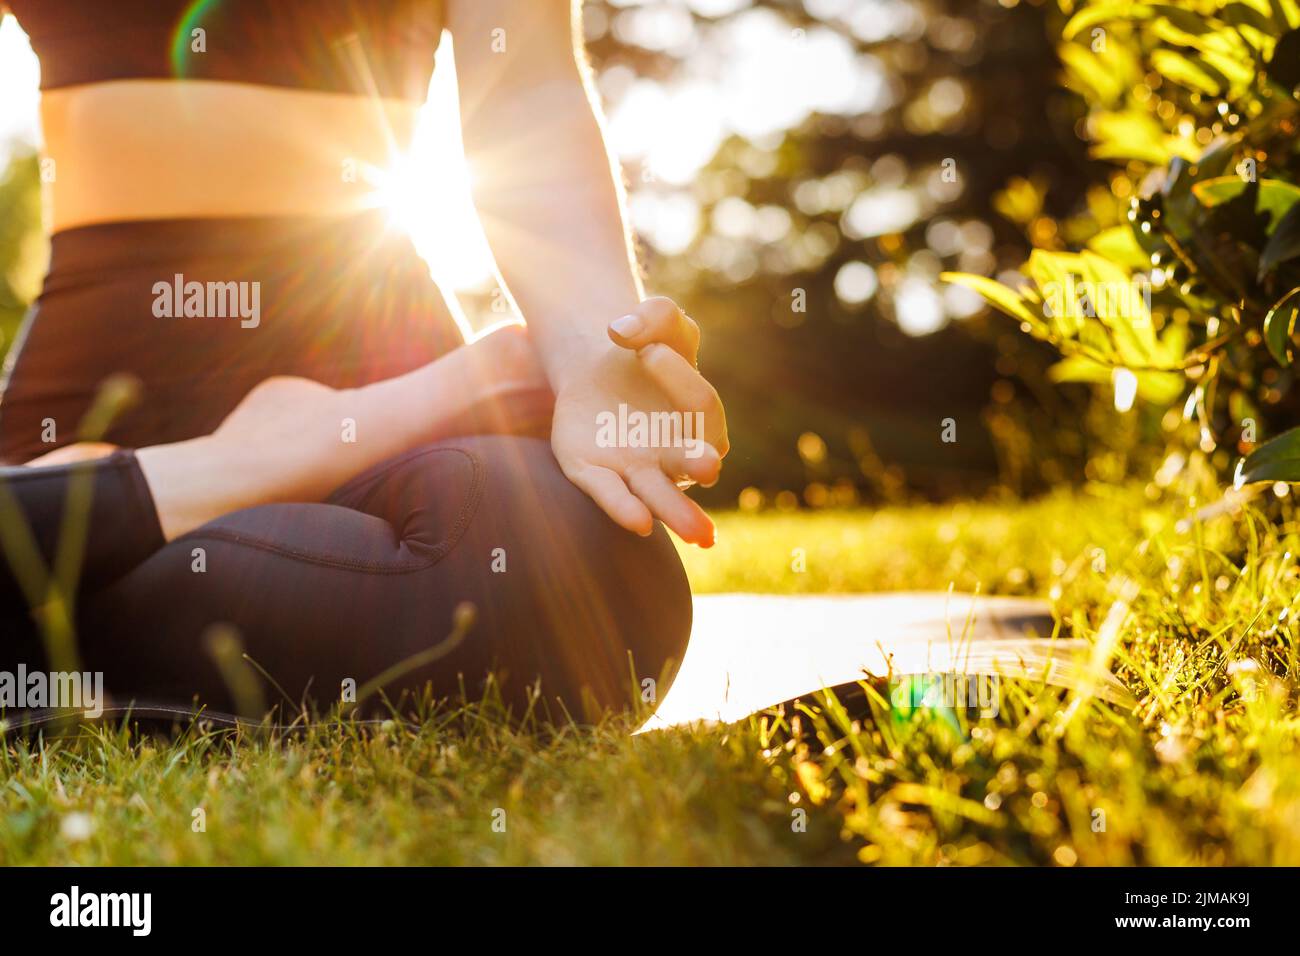 Nahaufnahme des Körpers einer jungen Frau, die in Lotushaltung sitzt, atmet und meditiert. Konzept von Outdoor Yoga, Entspannung, Zen und mentaler Balance. Wunderschön Stockfoto